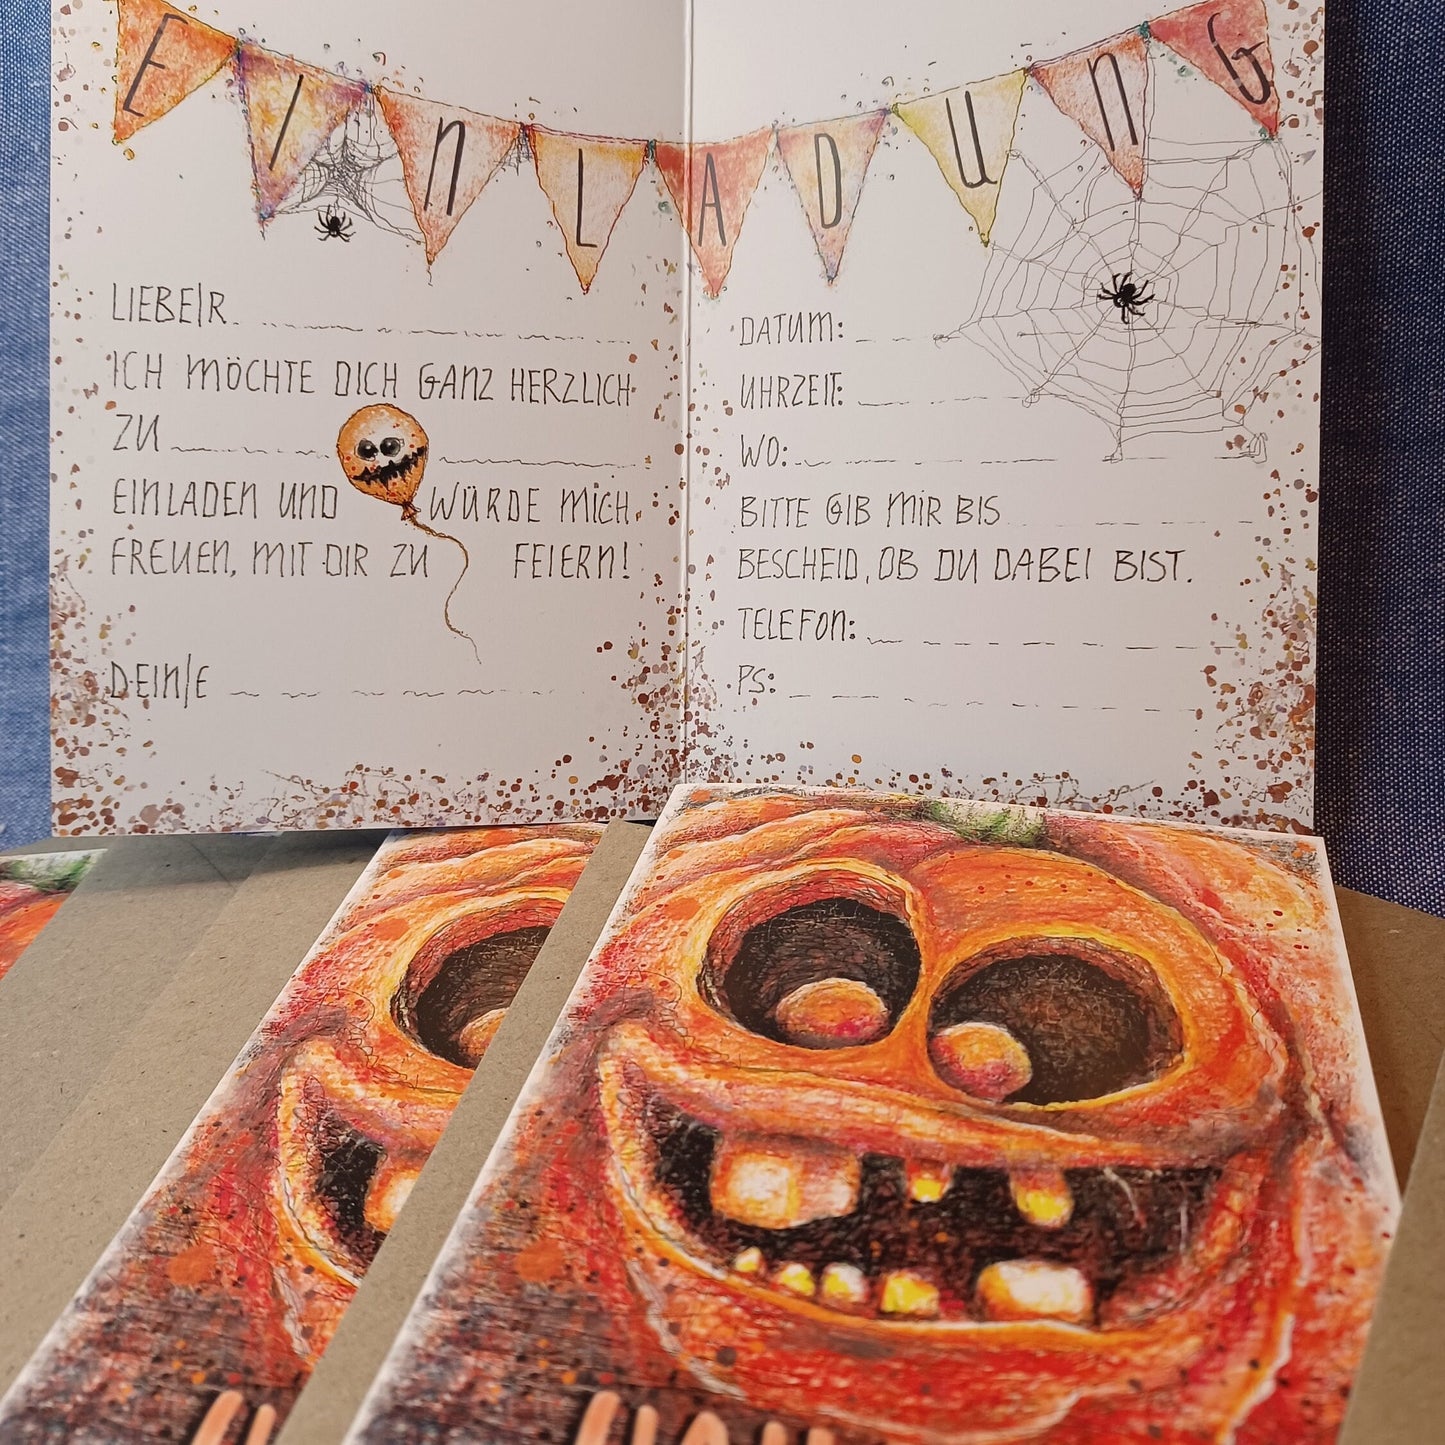 Halloweenparty Einladung | Kürbis Einladung | Pumpkin | Einladung Halloween | A6 Klappkarte mit Einladungstext